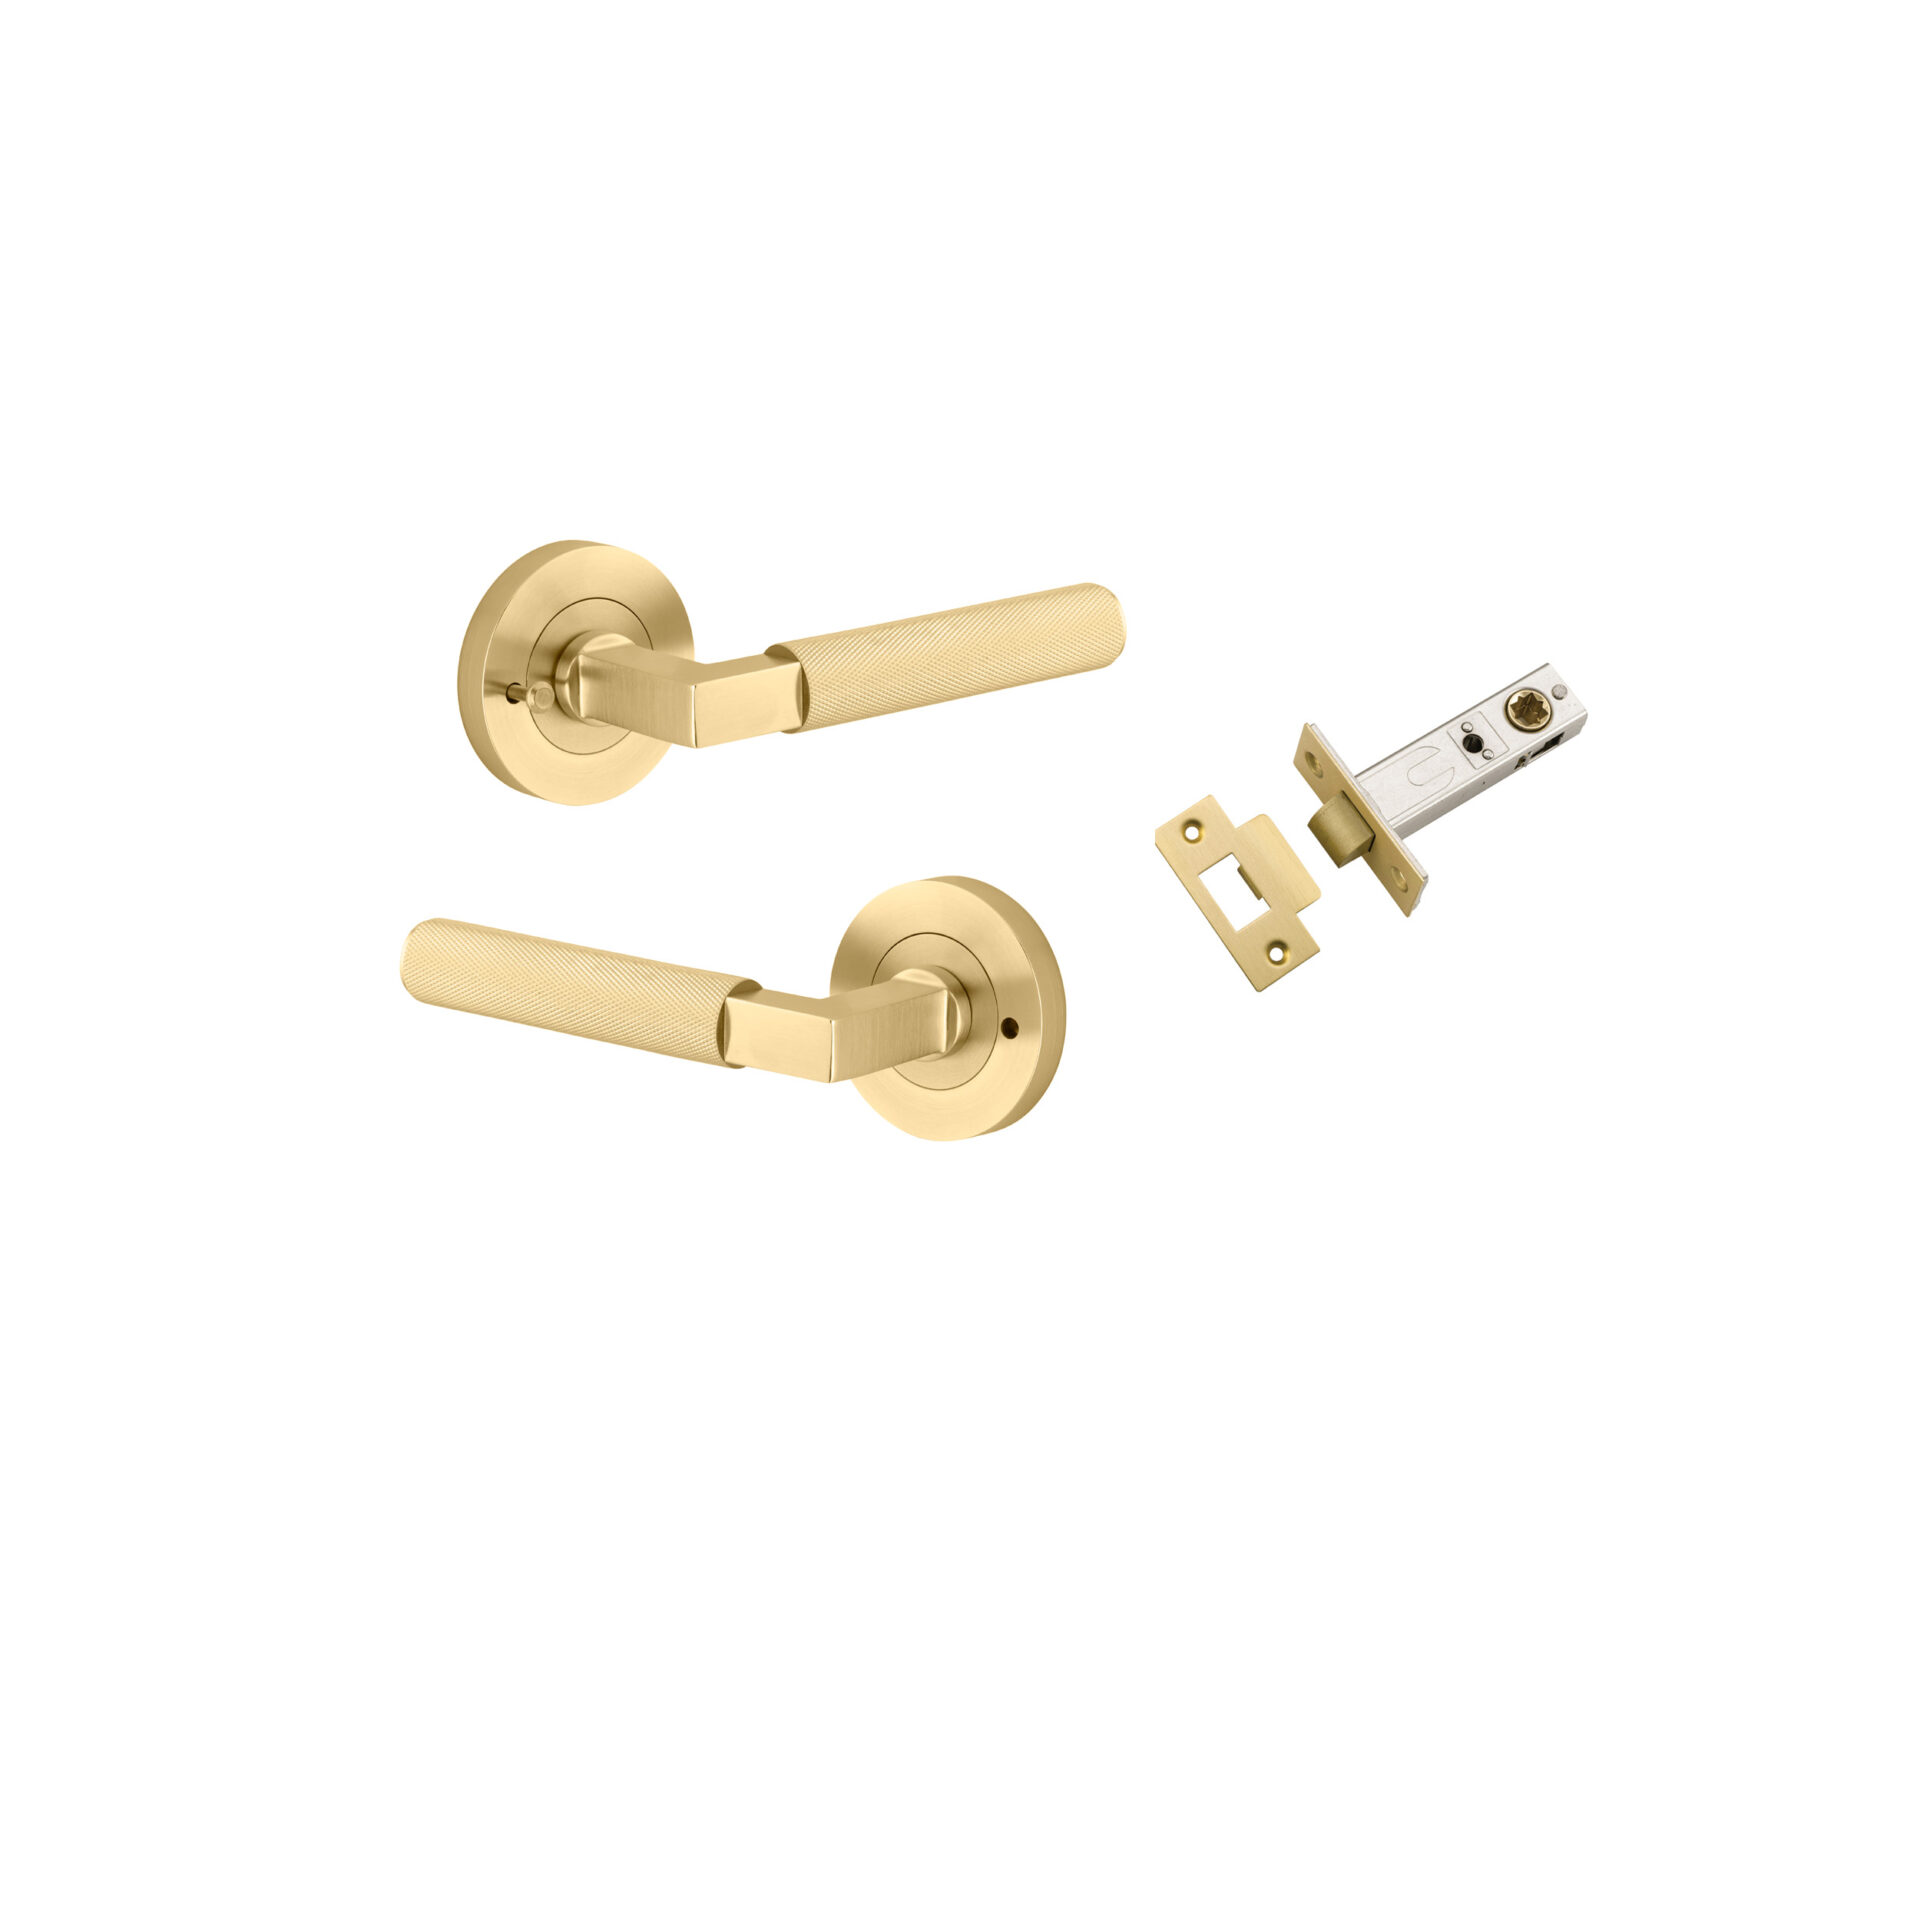 16261KIBPRIV60 - Brunswick Lever - Round Rose Privacy Kit (Inbuilt Privacy) - Brushed Gold PVD - Privacy